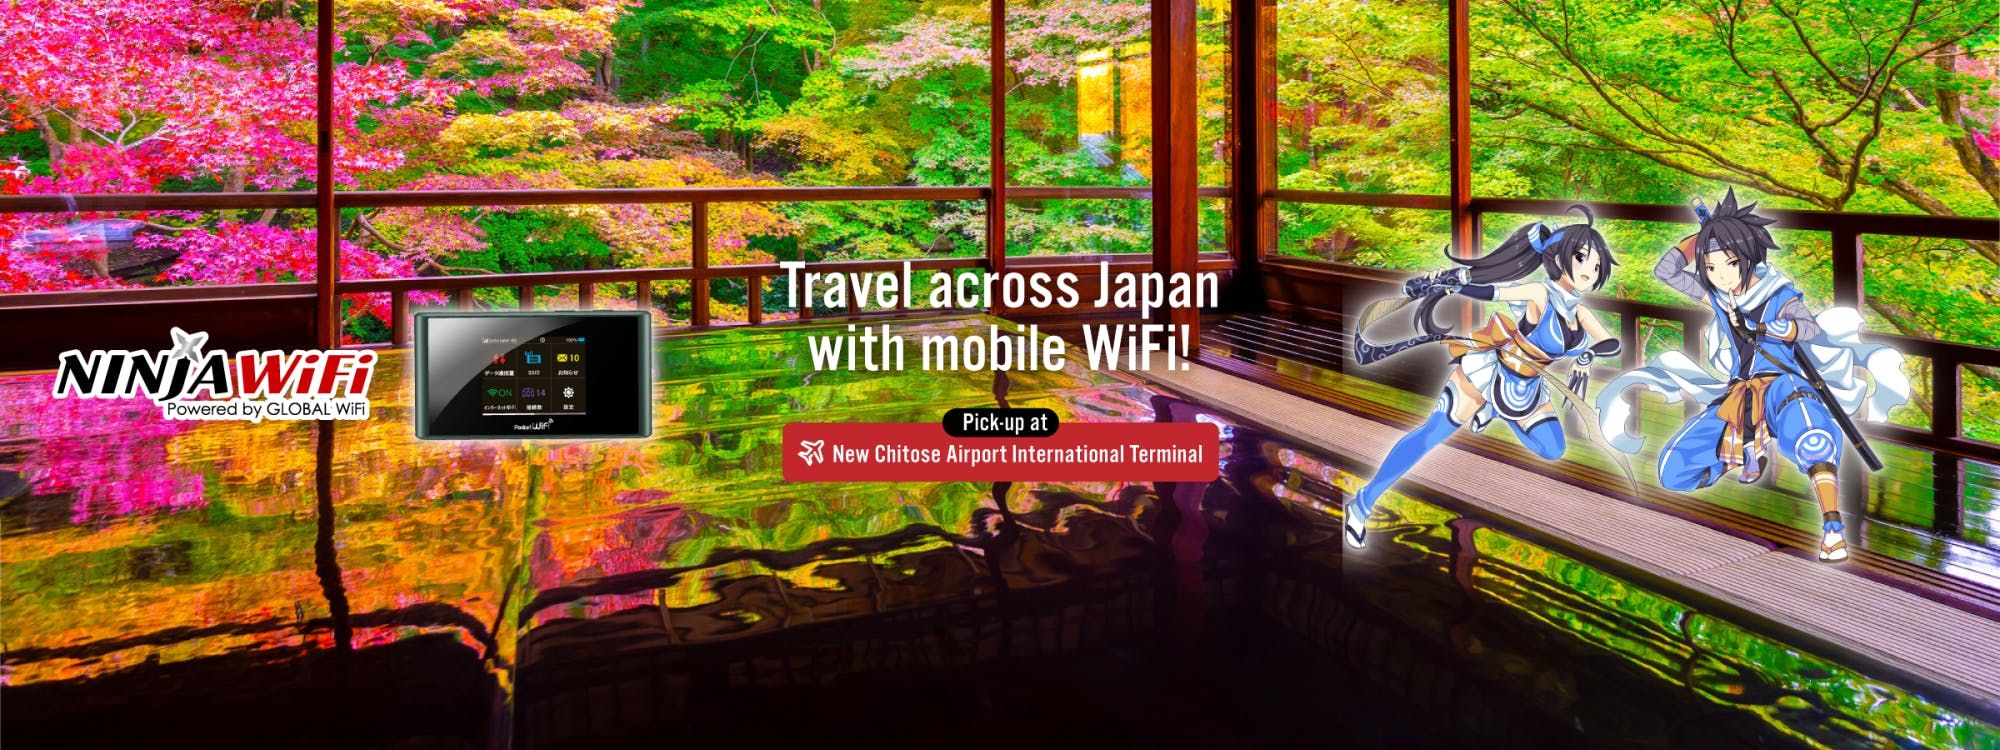 Imagen del tour: Alquiler de WiFi móvil - Nueva terminal internacional del aeropuerto de Chitose